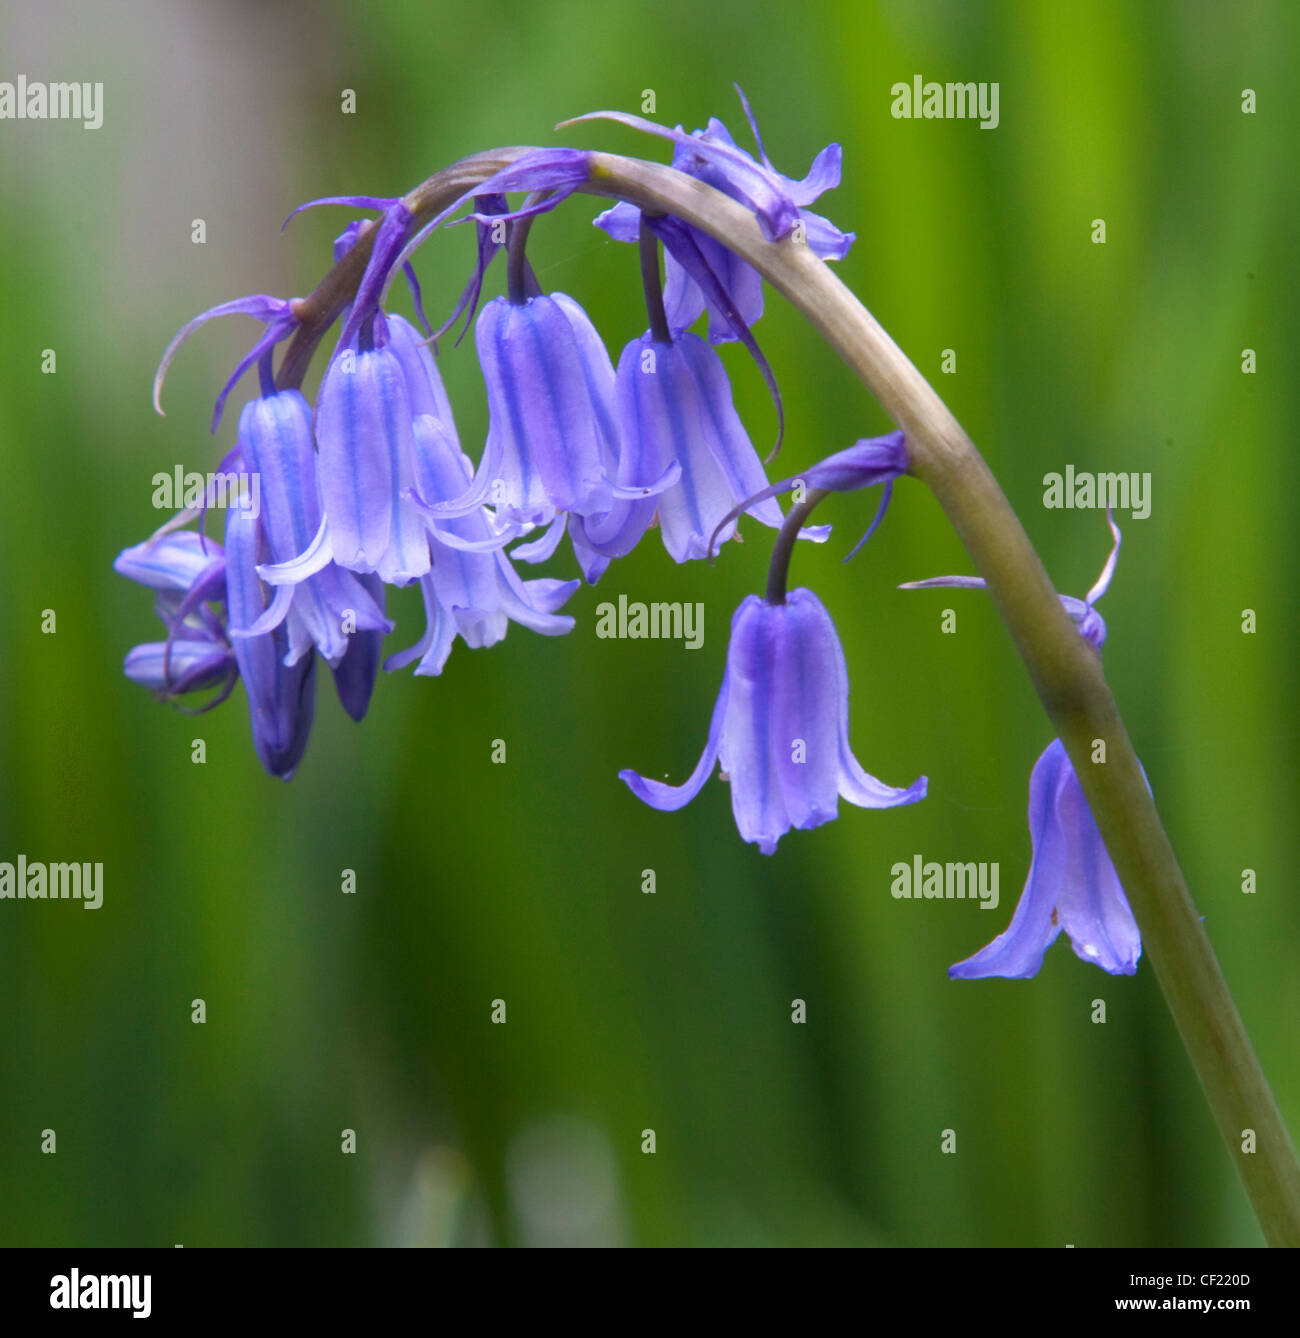 Bluebell, commune ( Hyacinthoides ) la fleur bleue vu au printemps, ici en Lymm, Cheshire, Royaume-Uni Banque D'Images